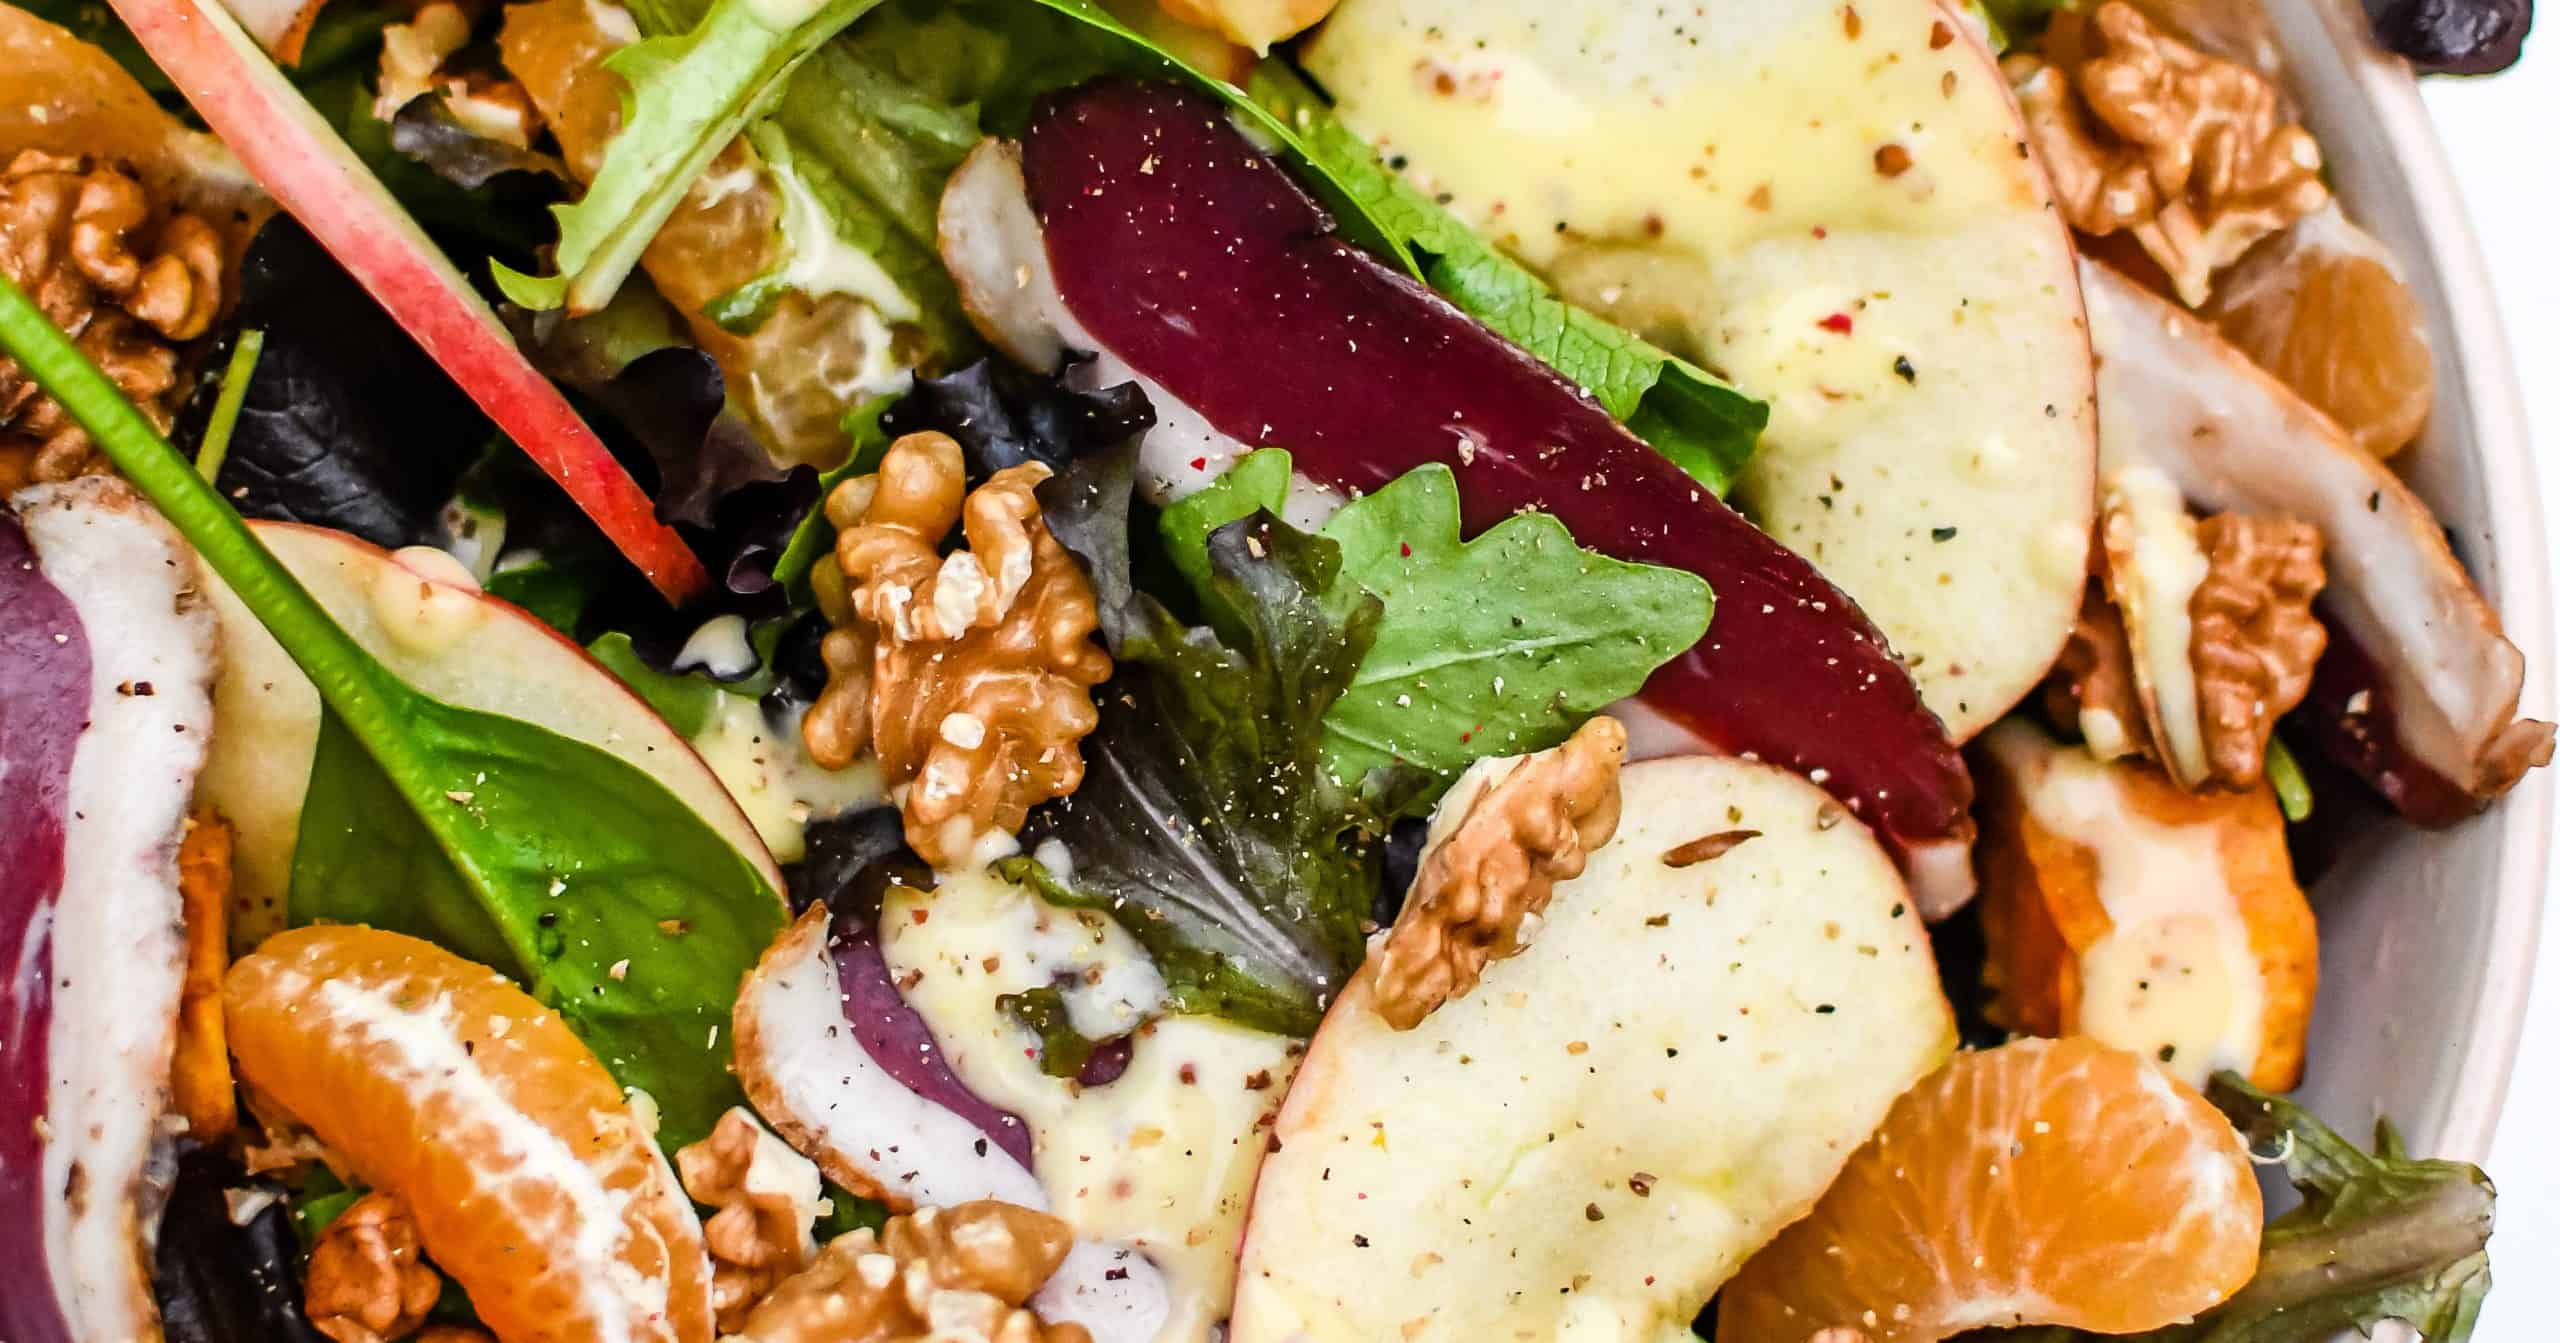 Salade aux magrets de canard séchés et fruits d’automne - Les salades